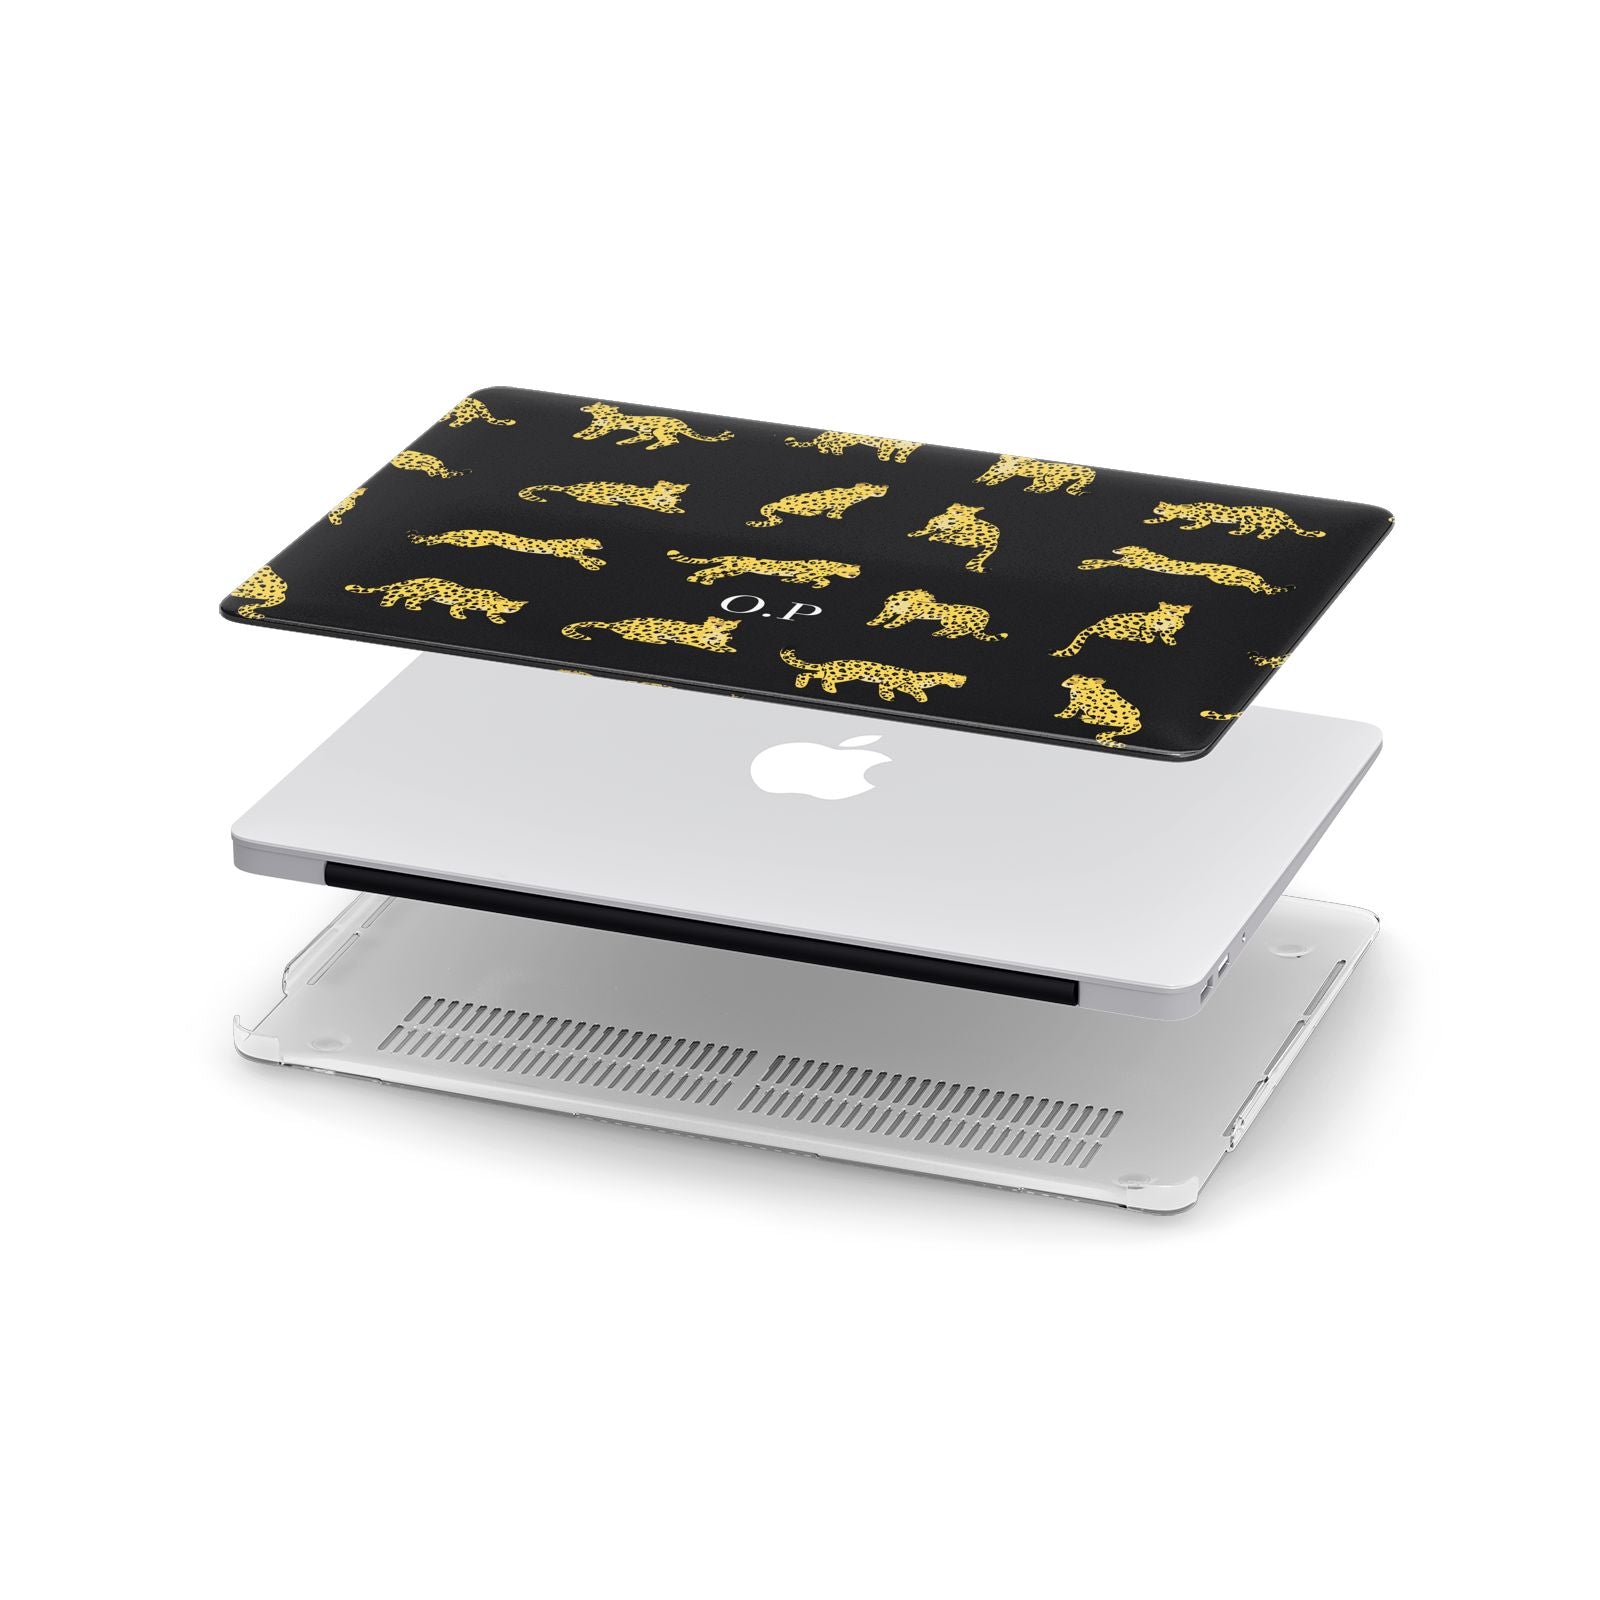 Prowling Leopard Apple MacBook Case in Detail